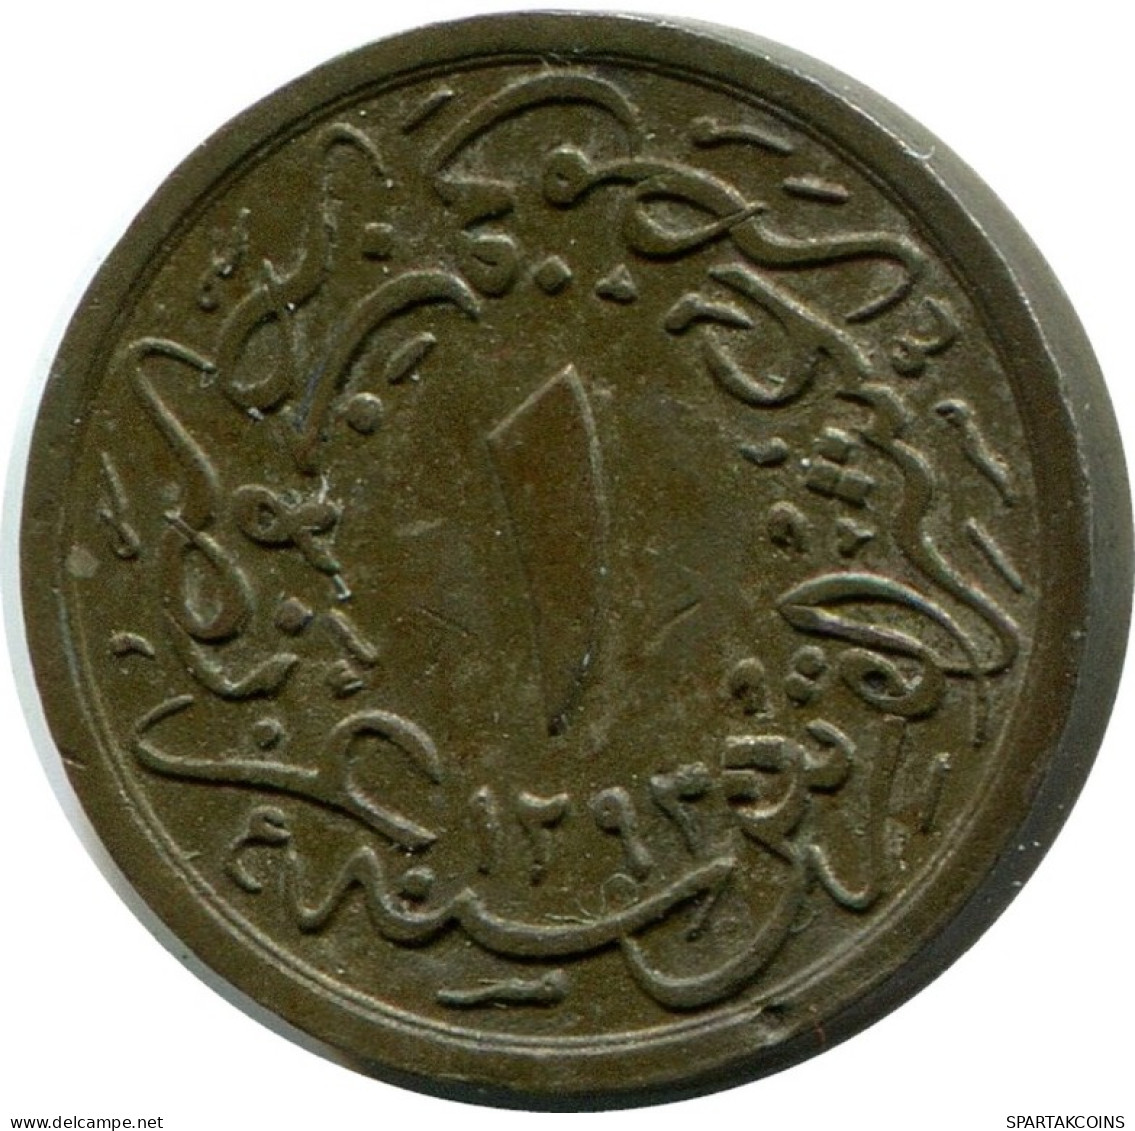 1/10 QIRSH 1886 ÄGYPTEN EGYPT Islamisch Münze #AH240.10.D.A - Egitto